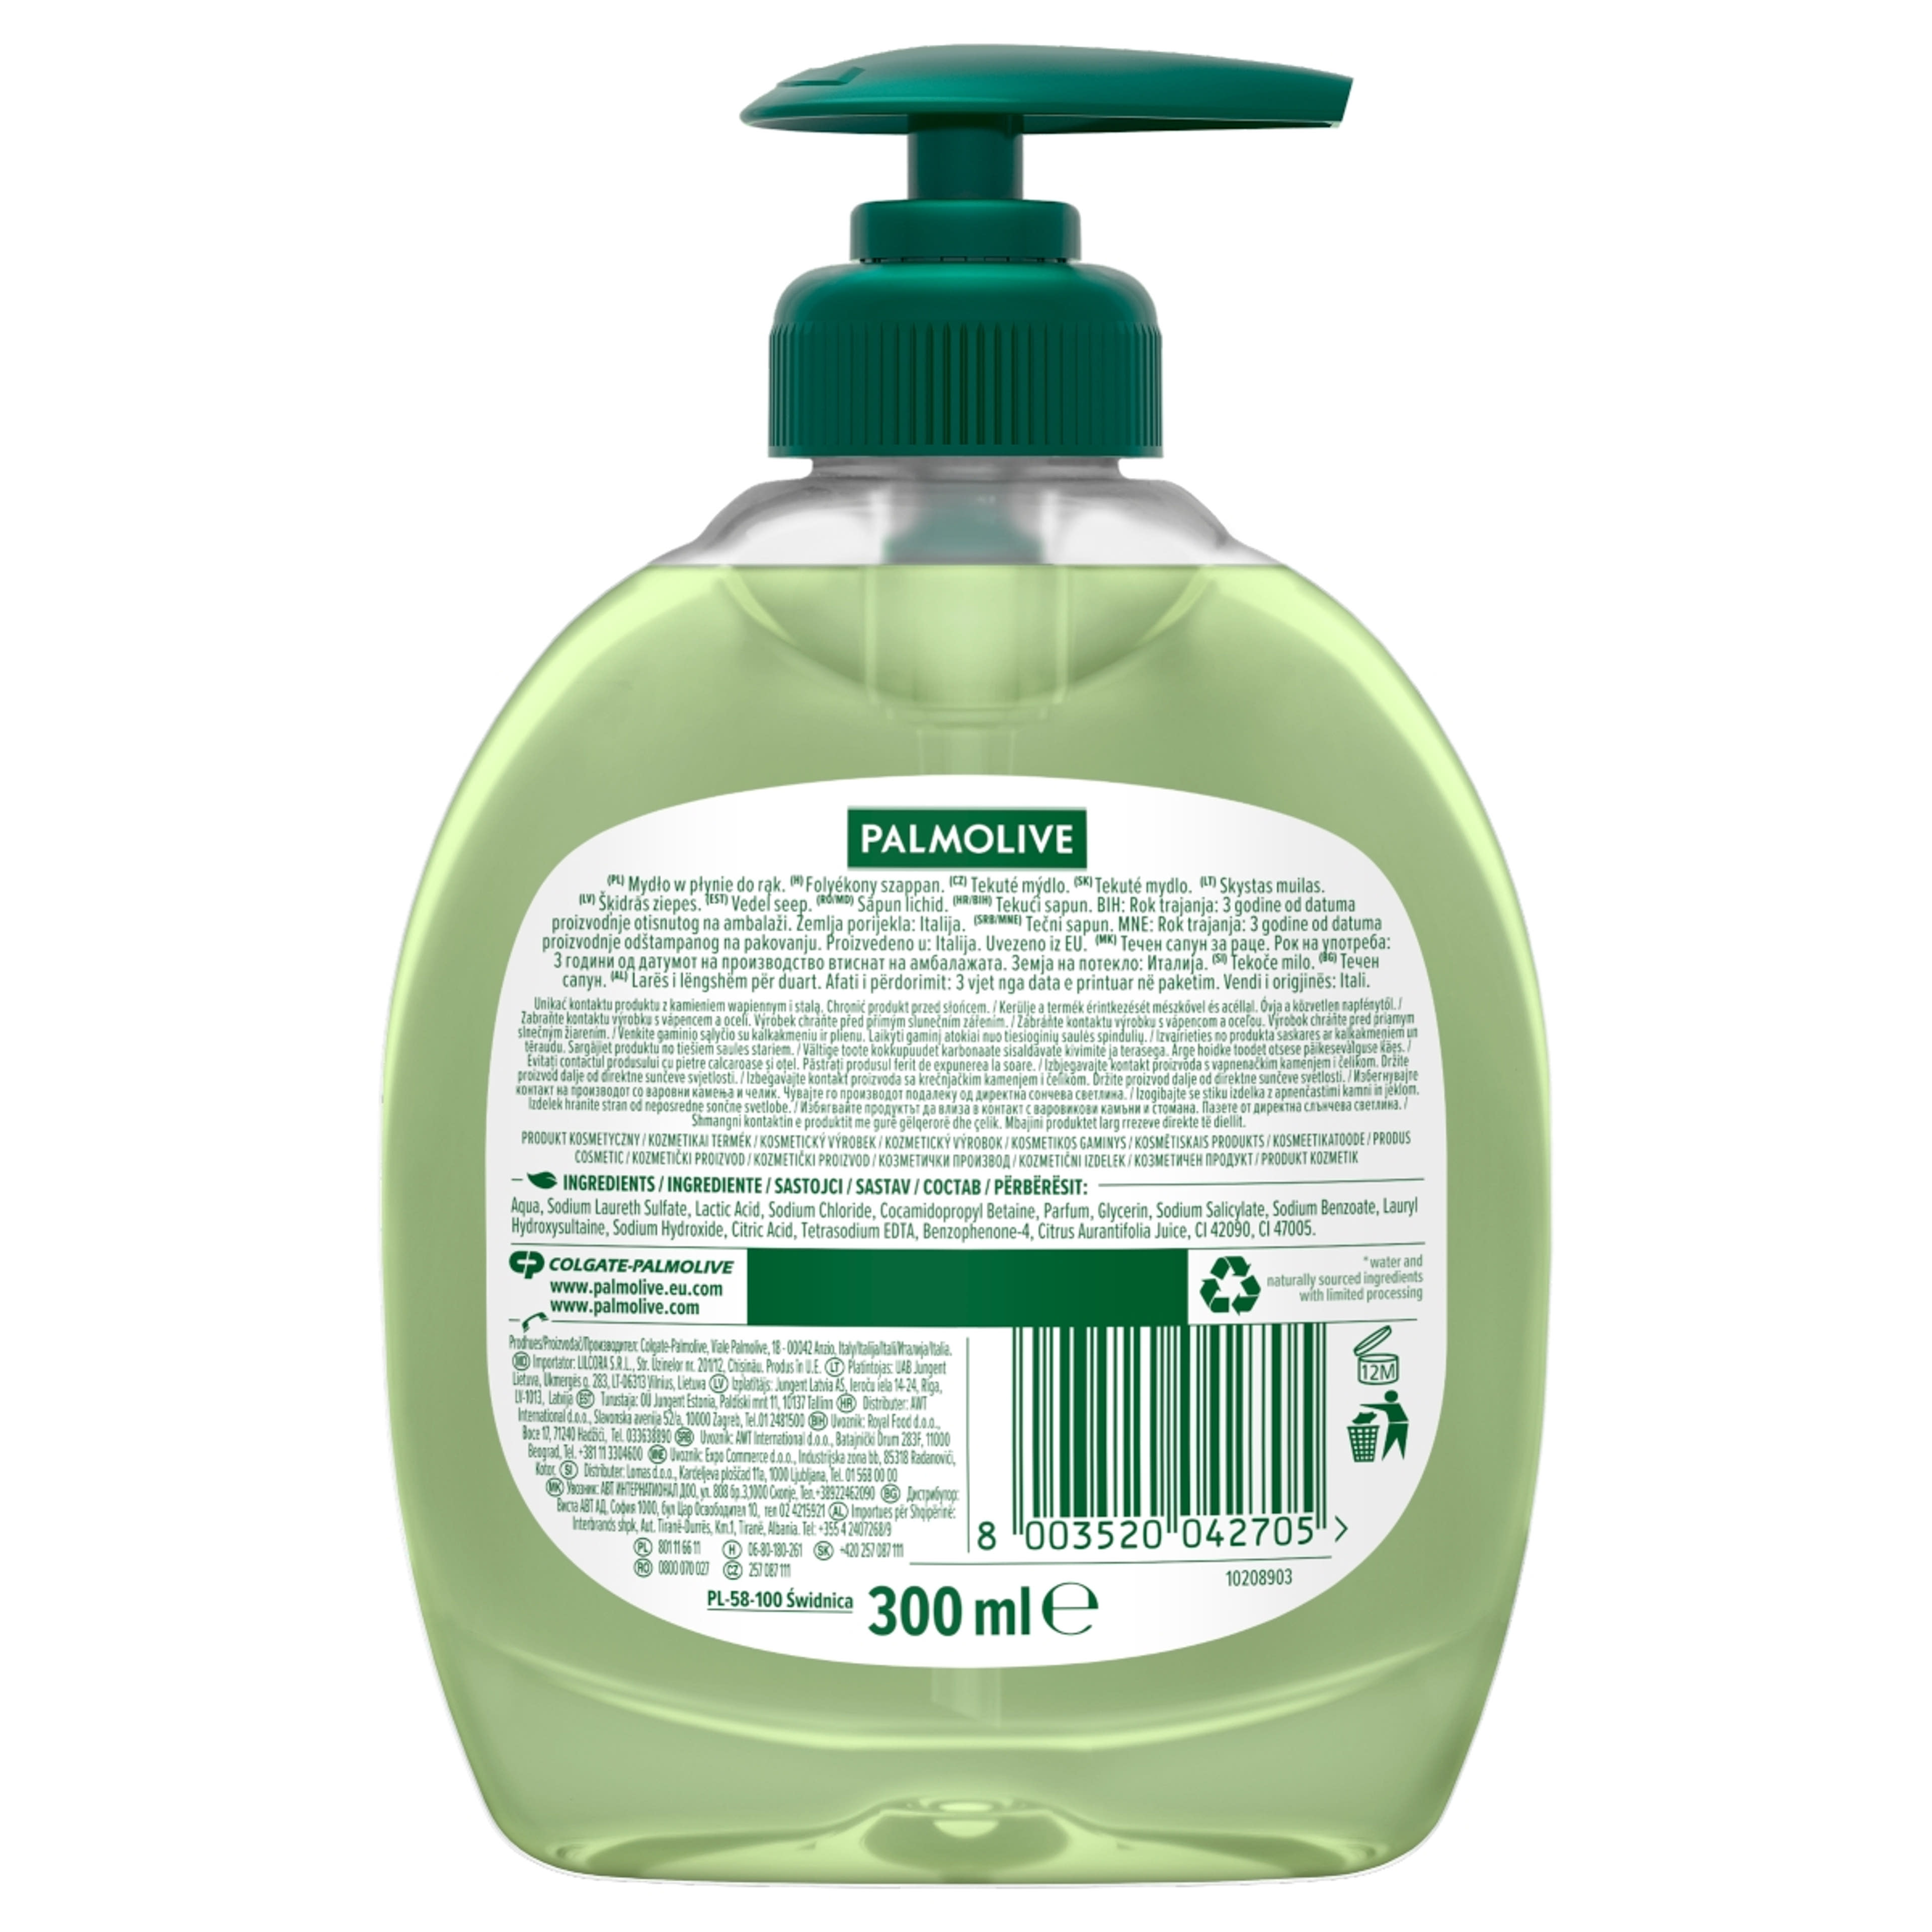 Palmolive Hygiene-Plus folyékony szappan lime kivonattal - 300 ml-2